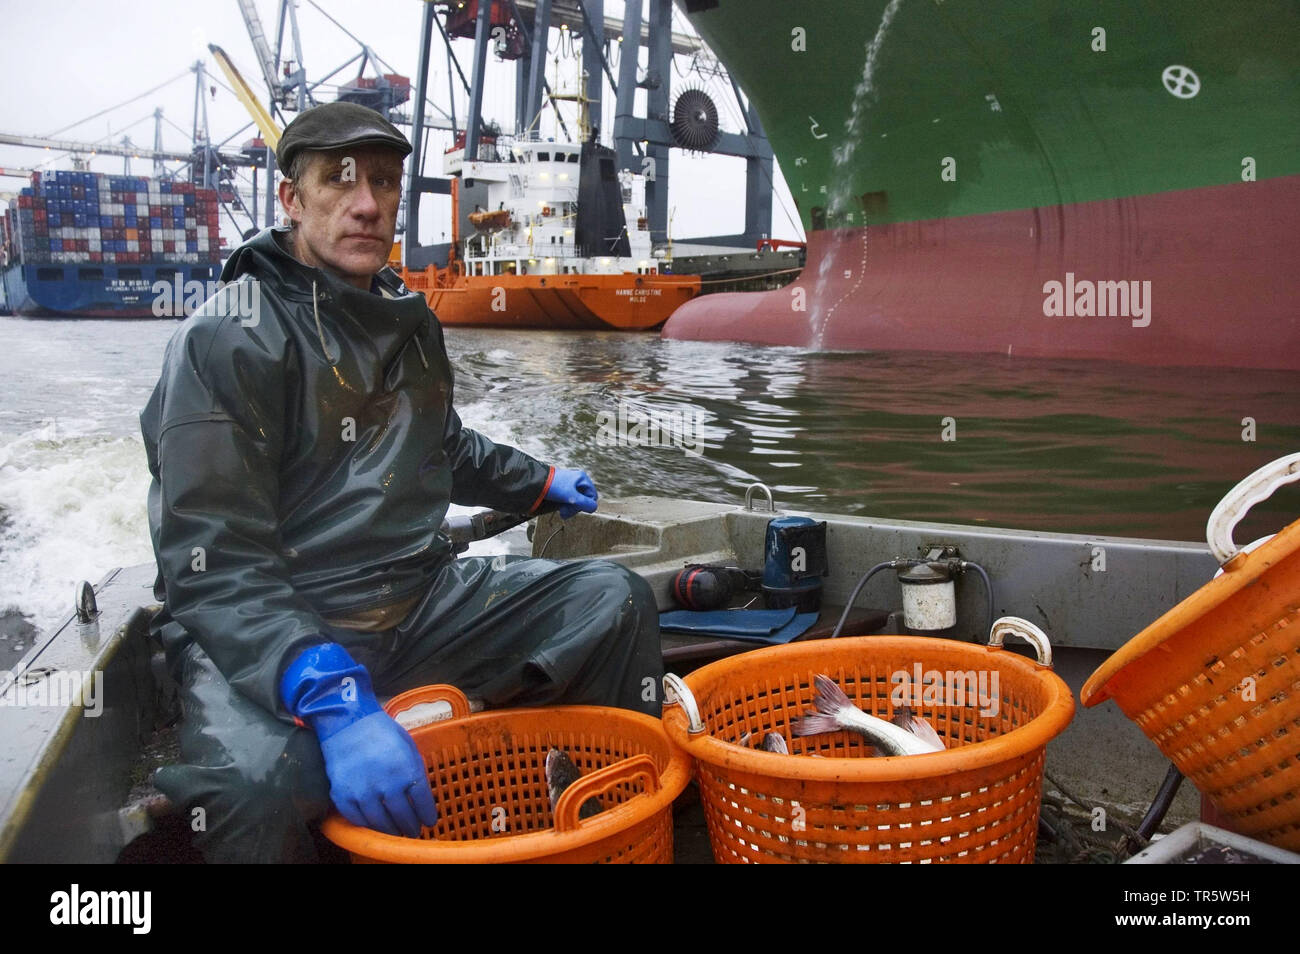 Fischerman in una barca da pesca sul fiume Elba nel porto di Amburgo, Germania, Amburgo Foto Stock